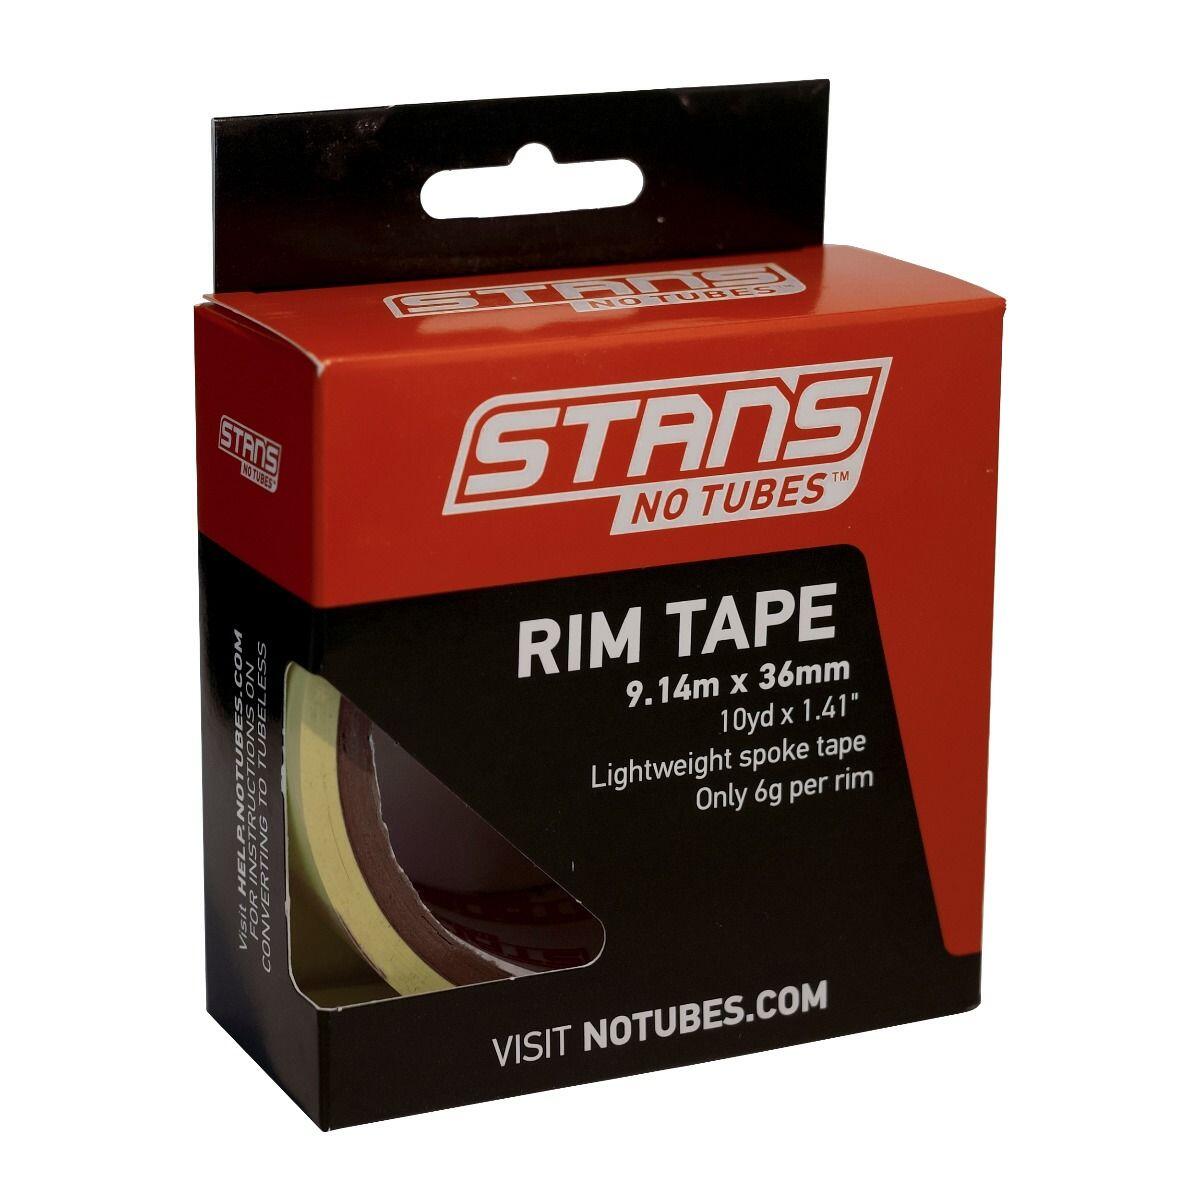 Stans NoTubes Rim Tape 10 yrd 36mm 1/3